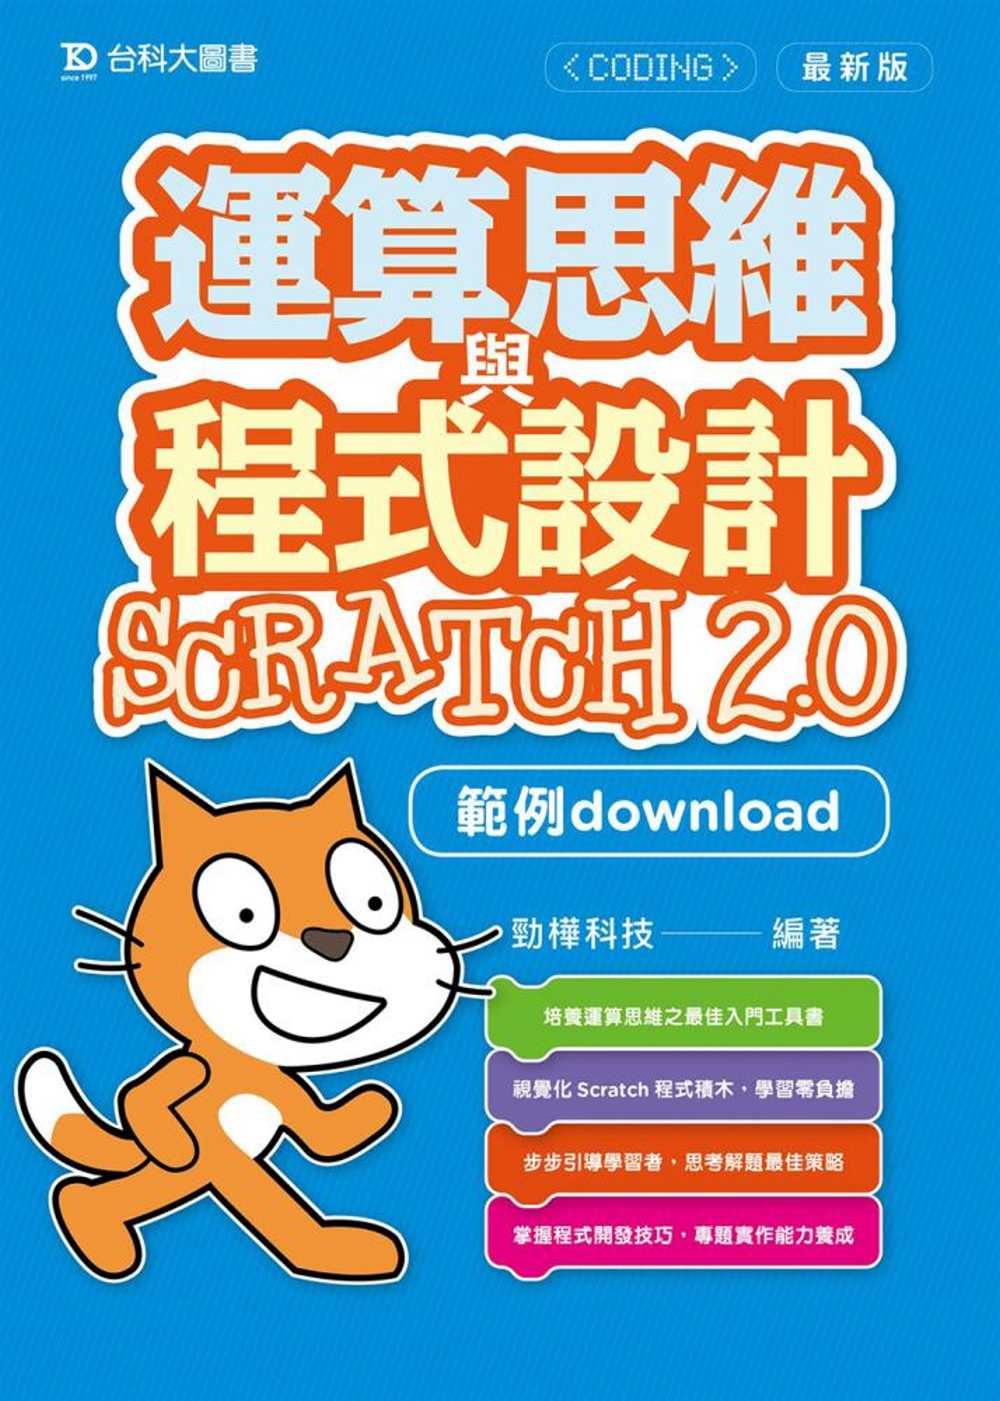 運算思維與程式設計Scratch2.0(範例download)(最新版)